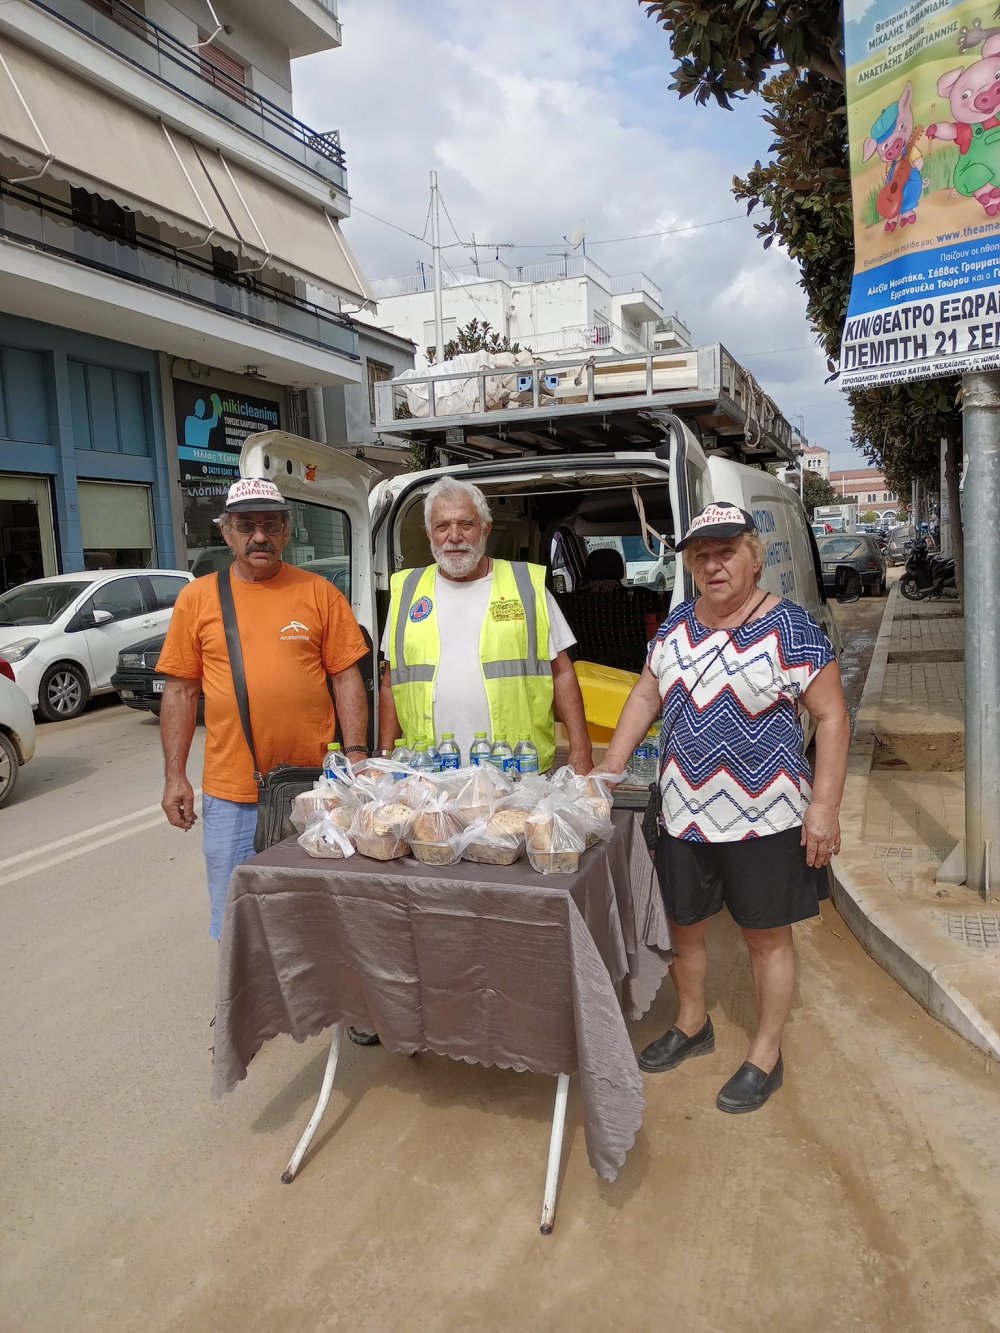 Η Κουζίνα Αλληλεγγύης Βόλου σε συνεργασία με τη Λέσχη Εθελοντών Βόλου πρόσφερε φαγητό και νερό